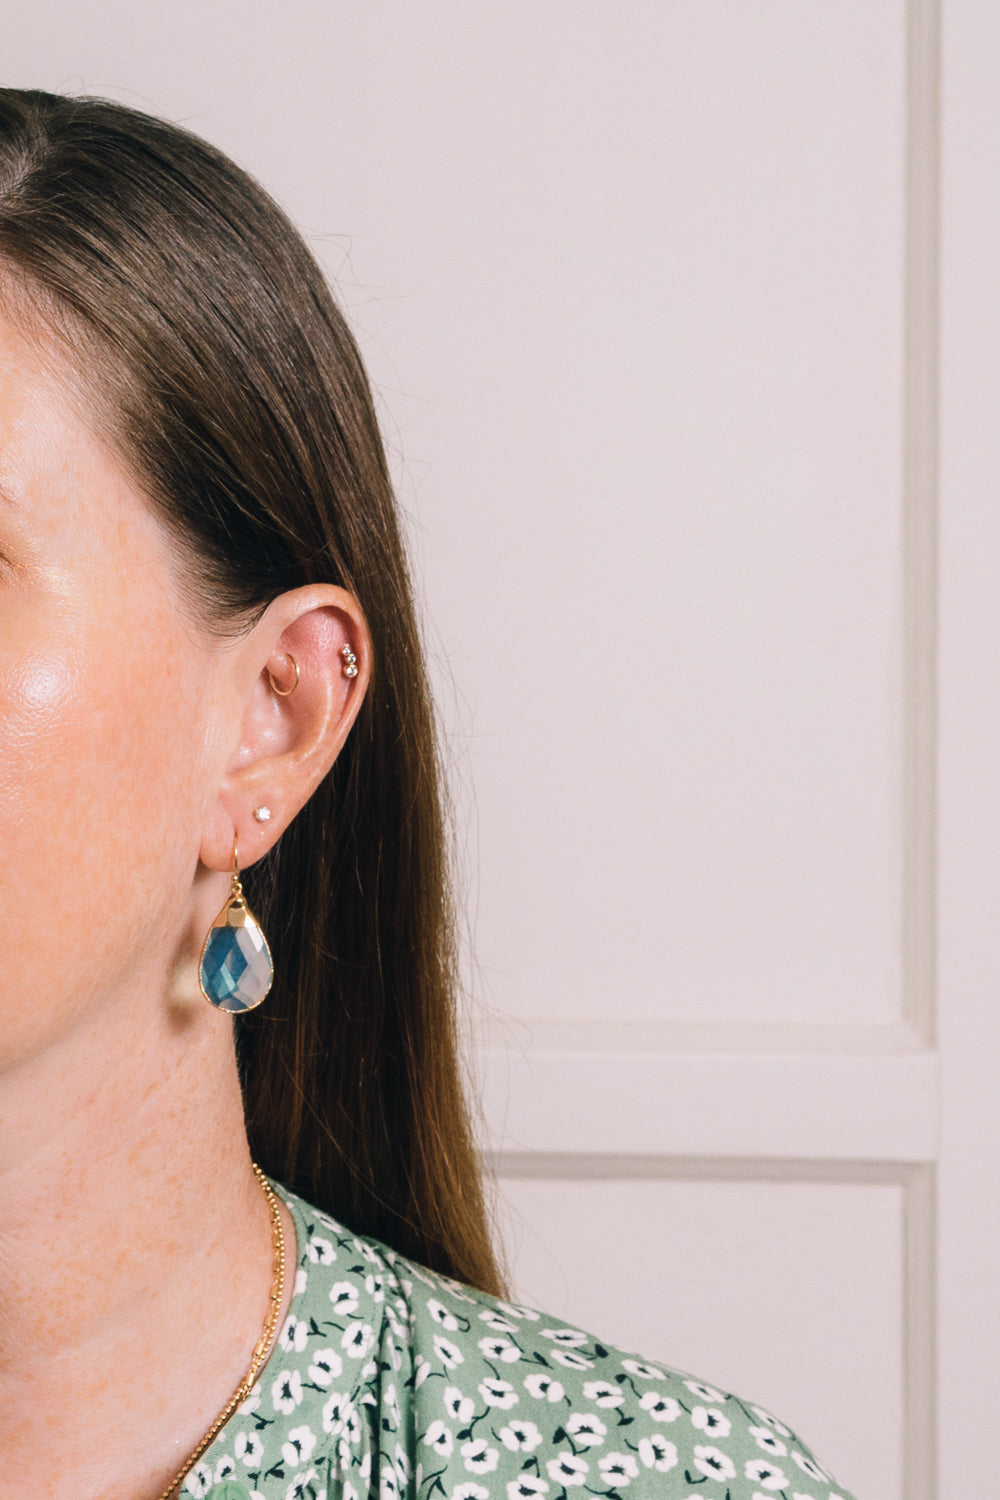 lt blue quartz teardrop earrings on model